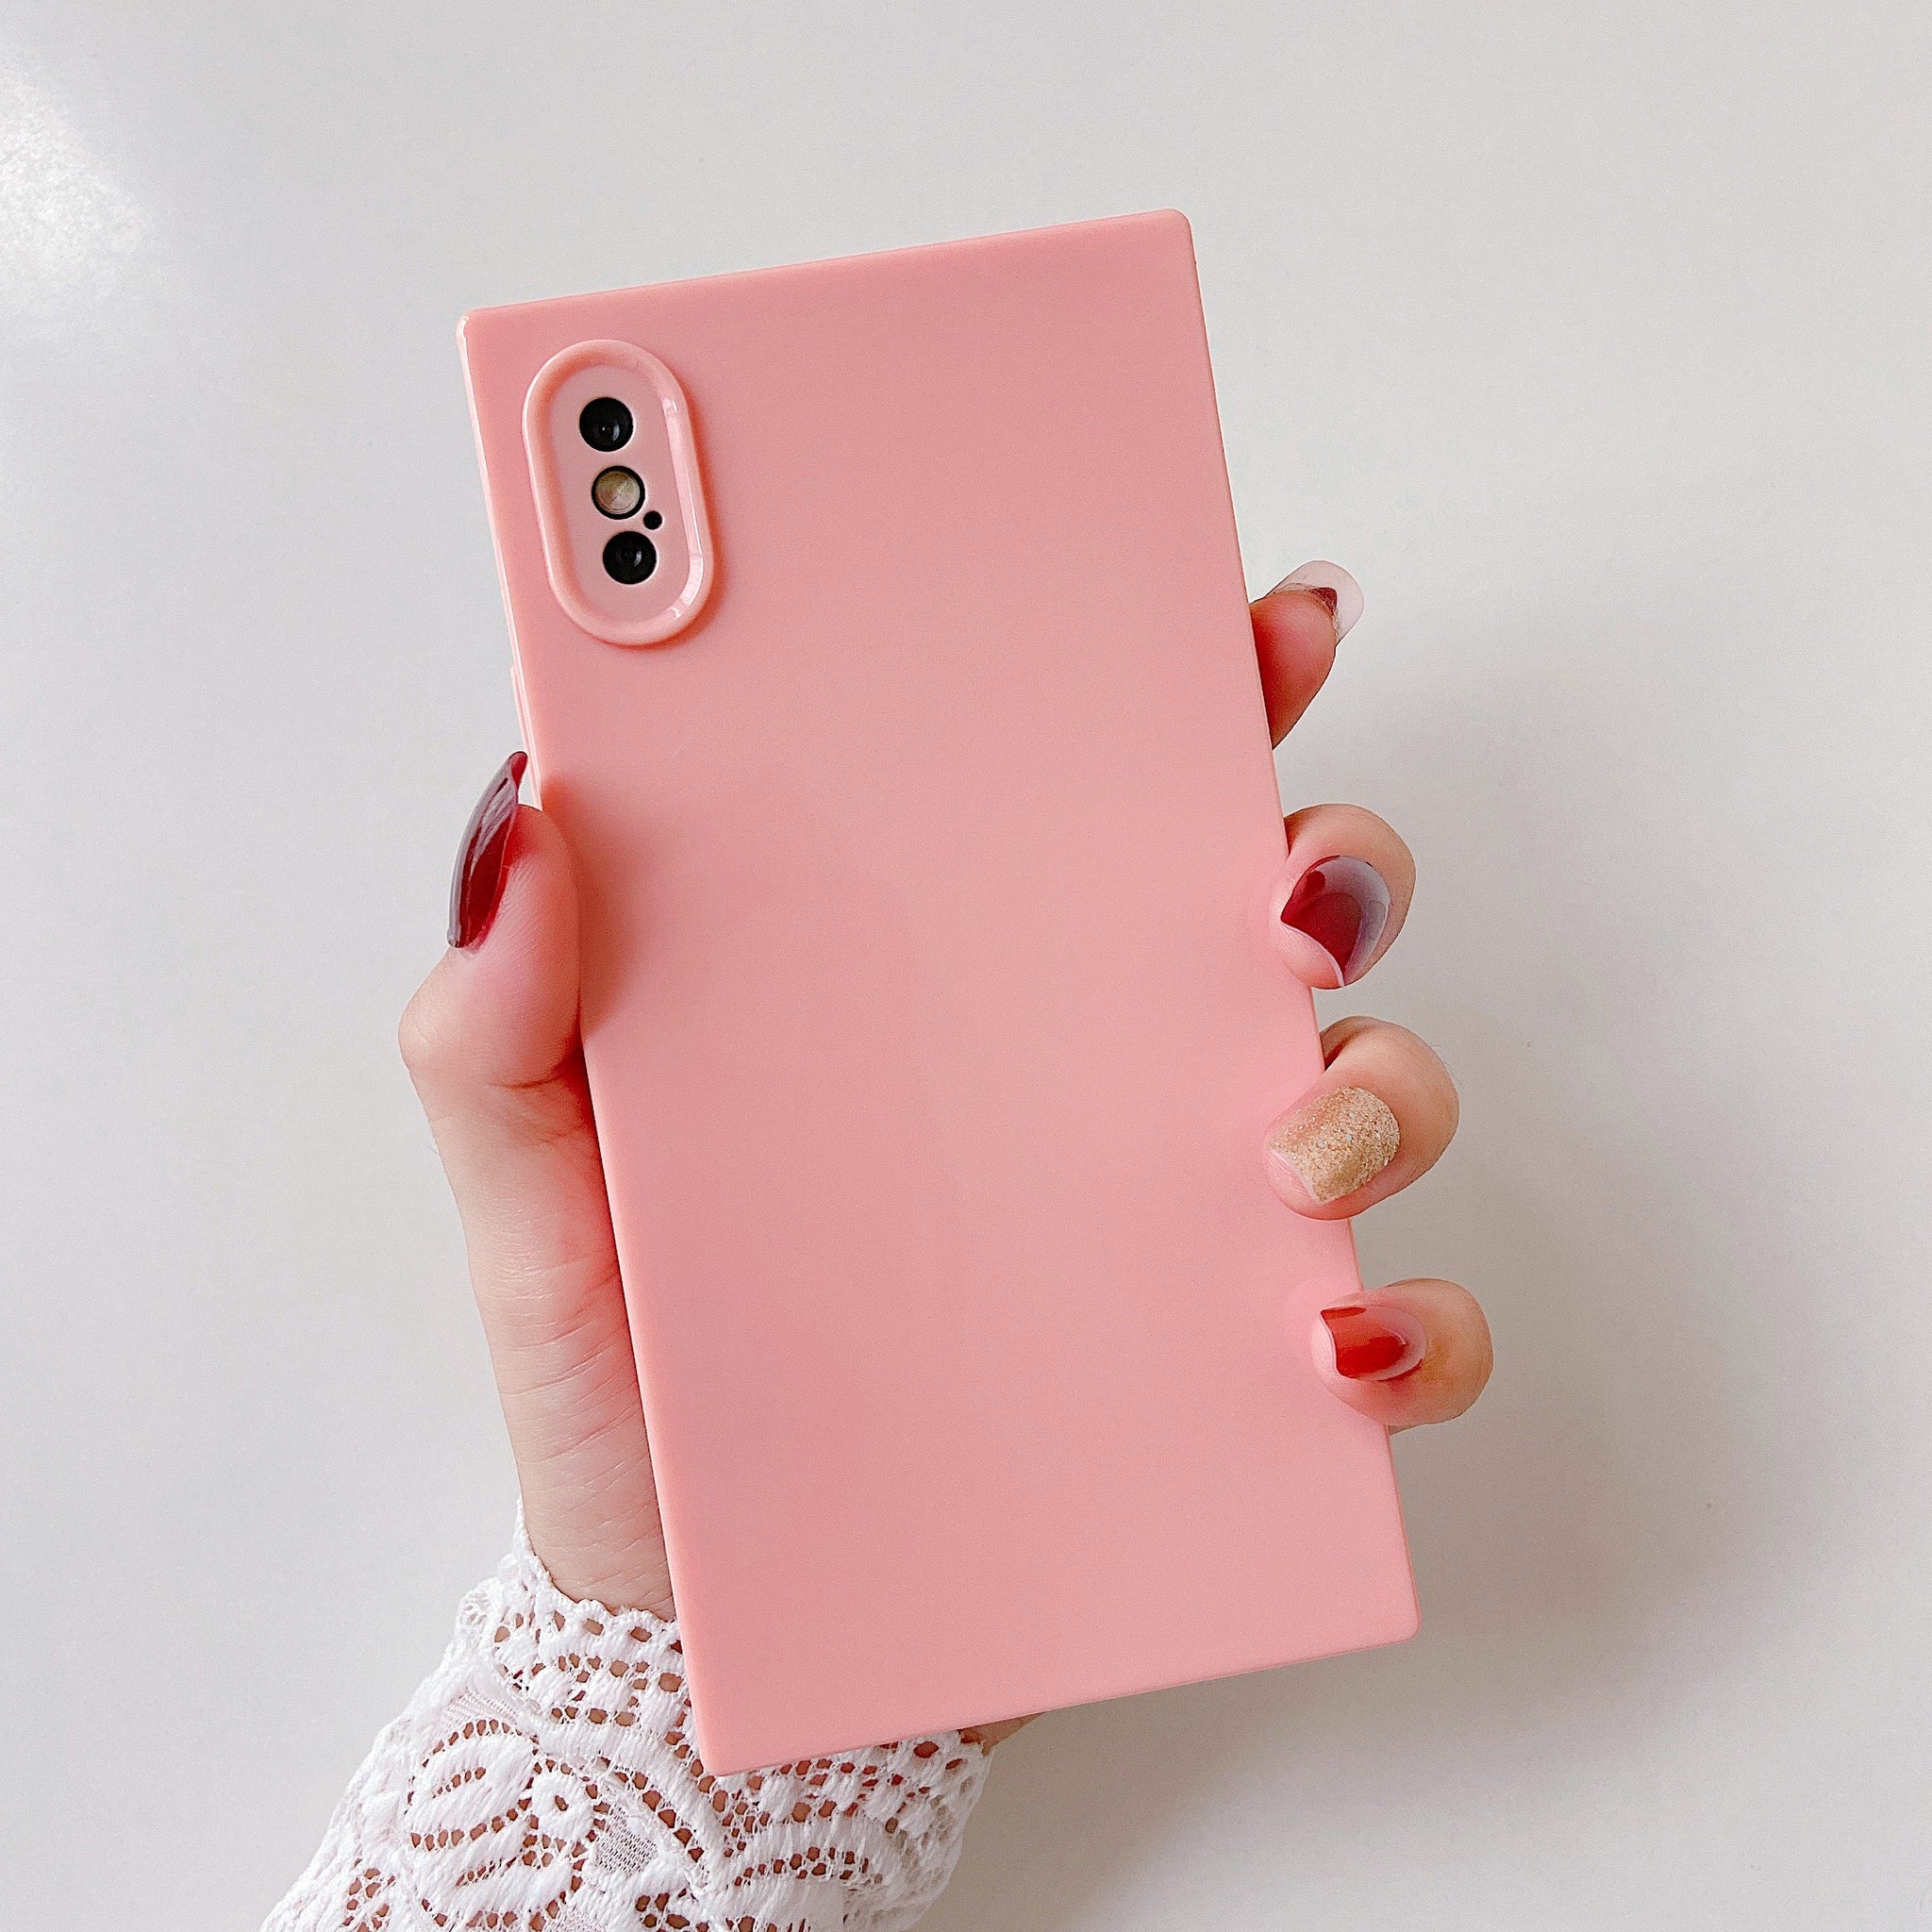 iPhone XR Case Square Plain Color (Pink)